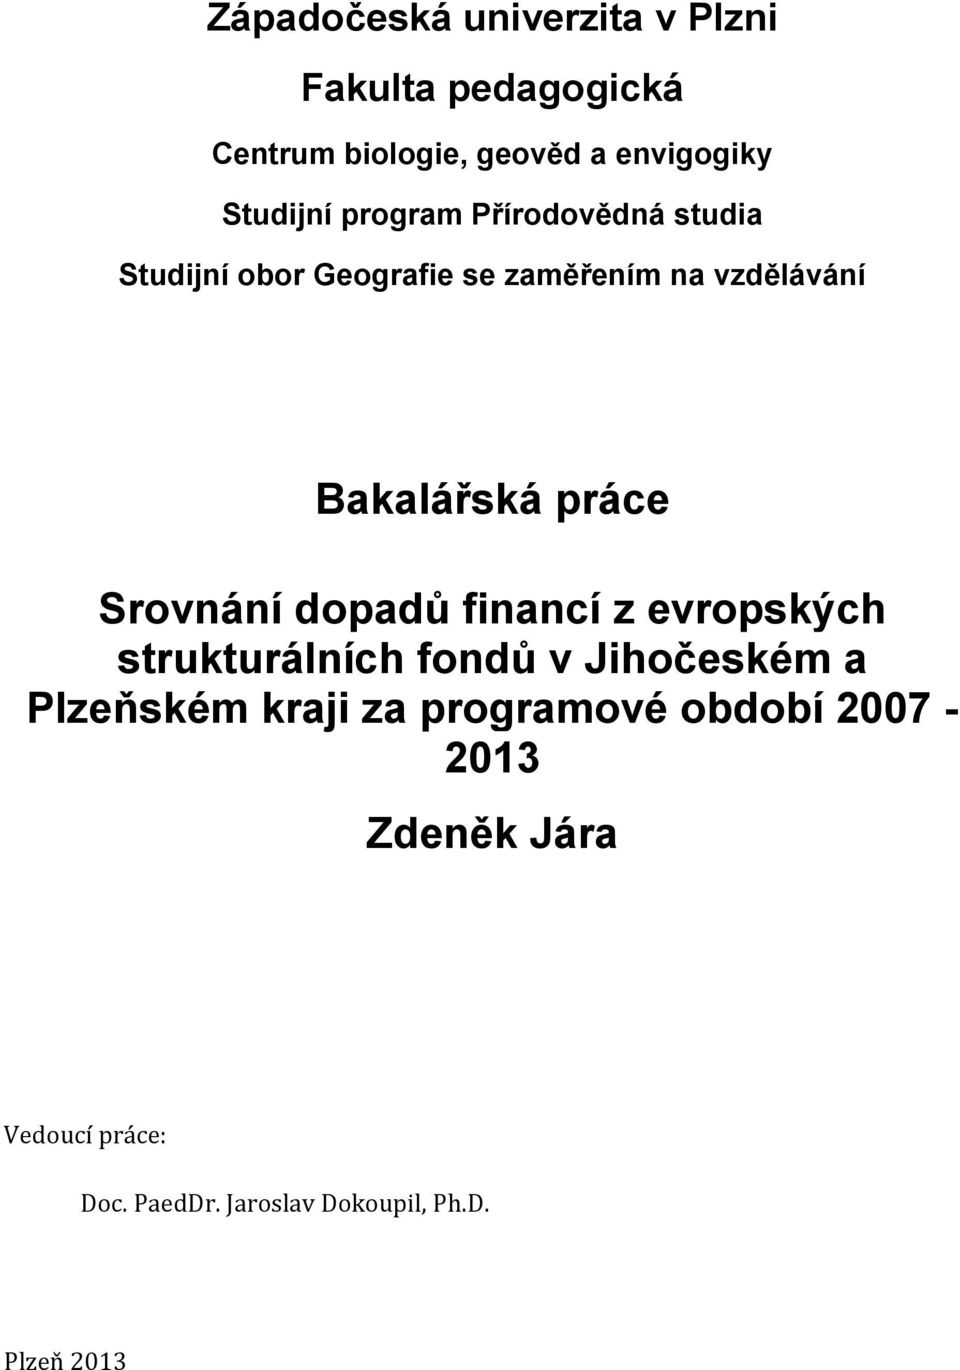 Srovnání dopadů financí z evropských strukturálních fondů v Jihočeském a Plzeňském kraji za